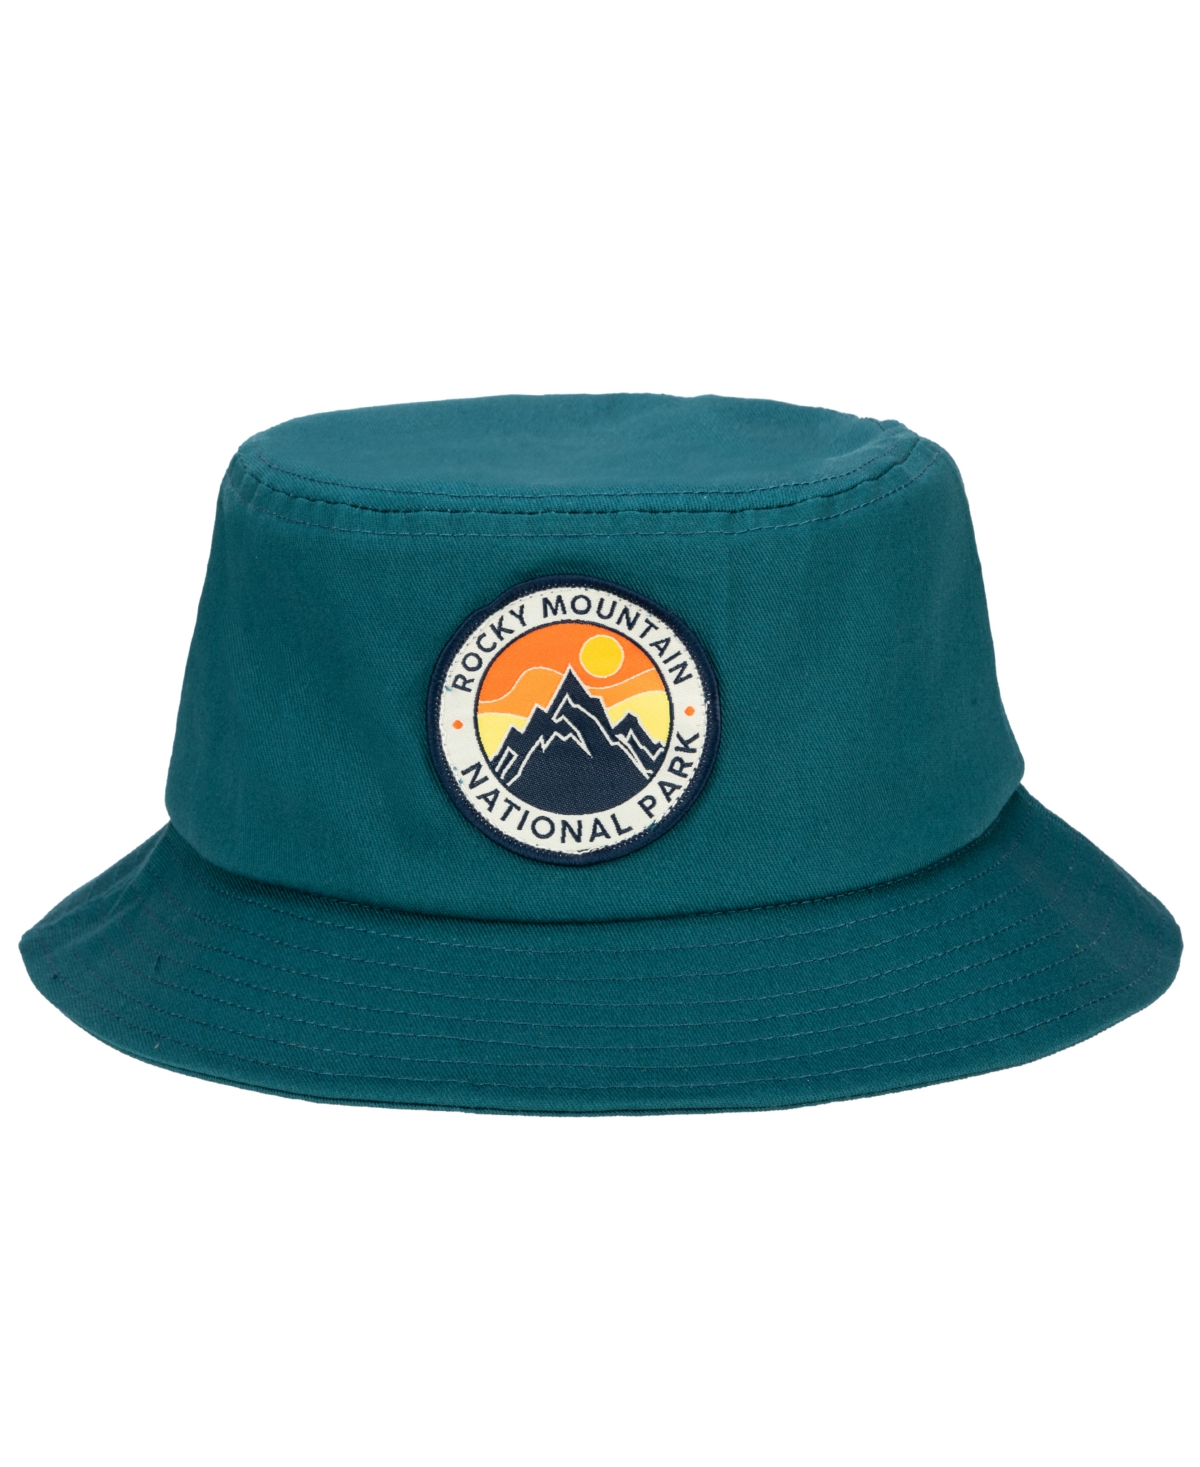 Men's Bucket Hat - Rocky Mountain Slate Blue